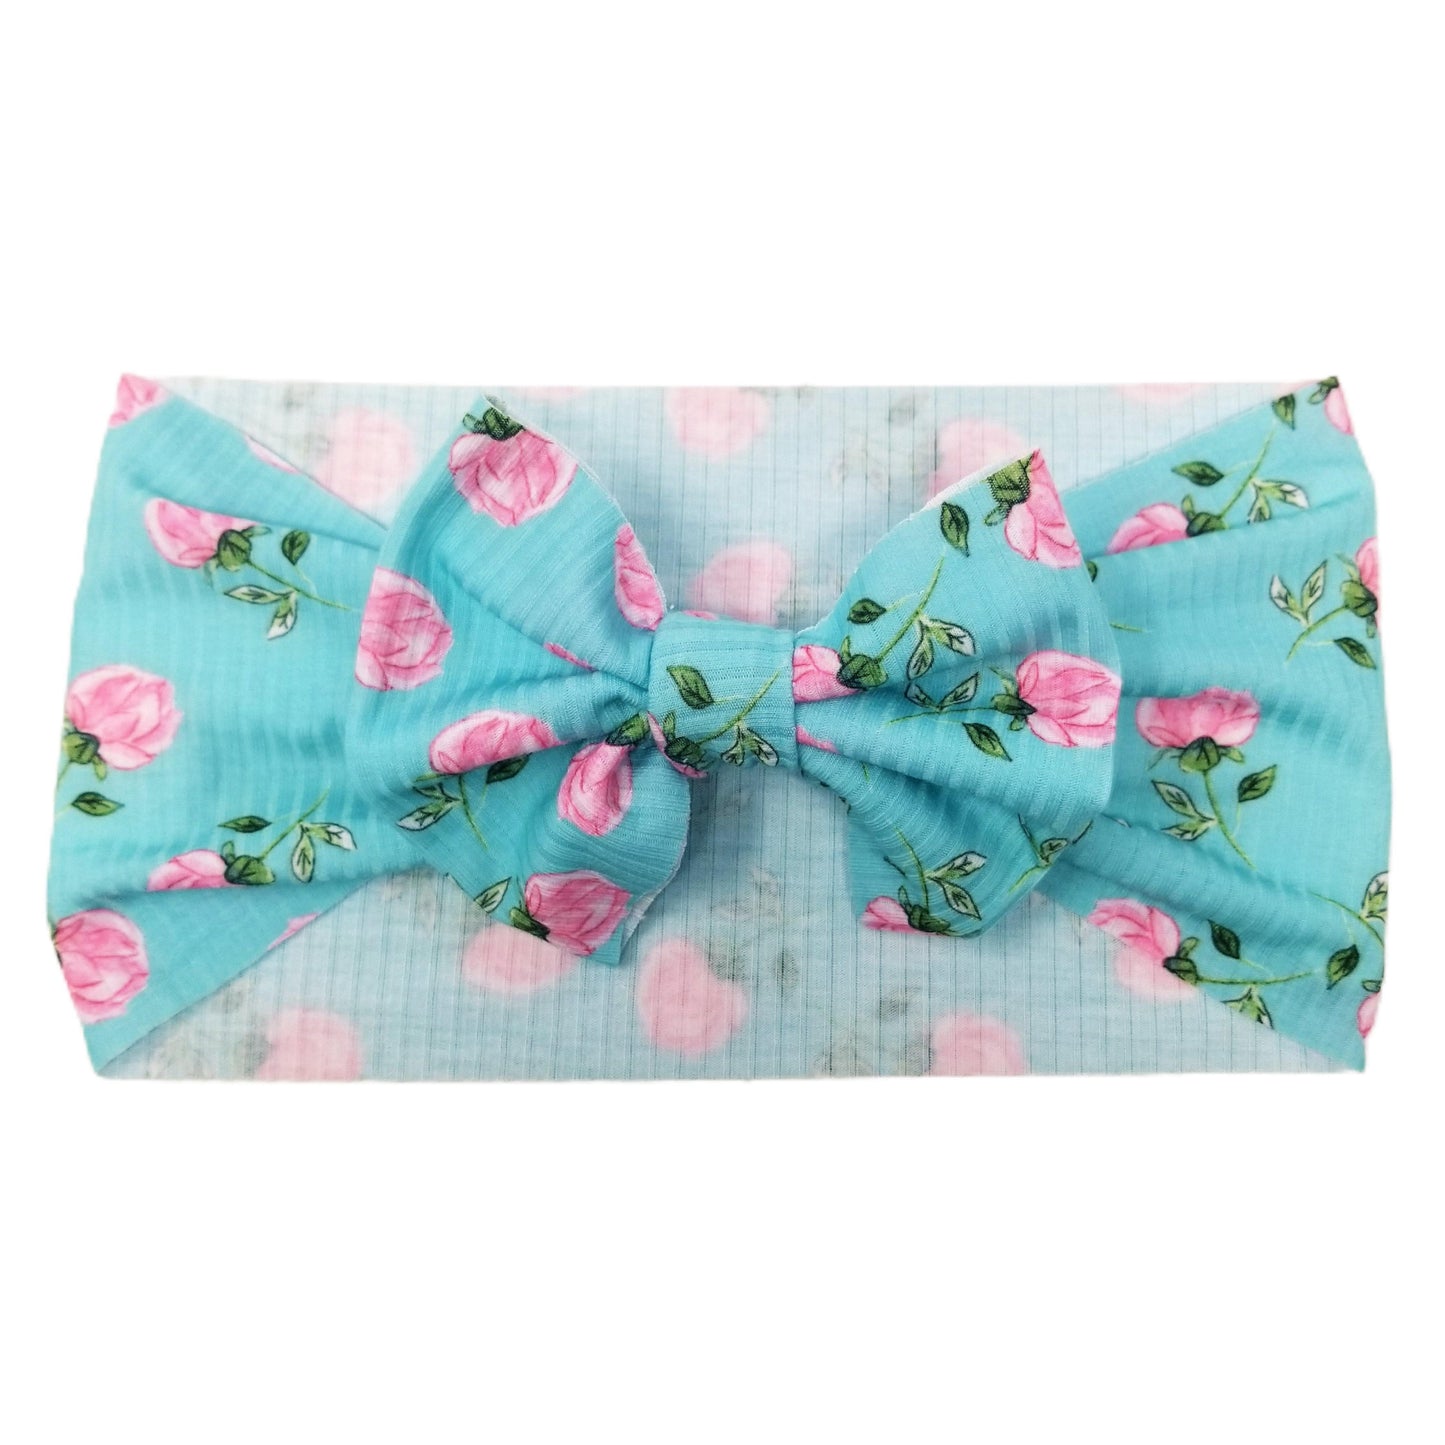 Budding Floral Rib Knit Fabric Bow Headwrap 5"